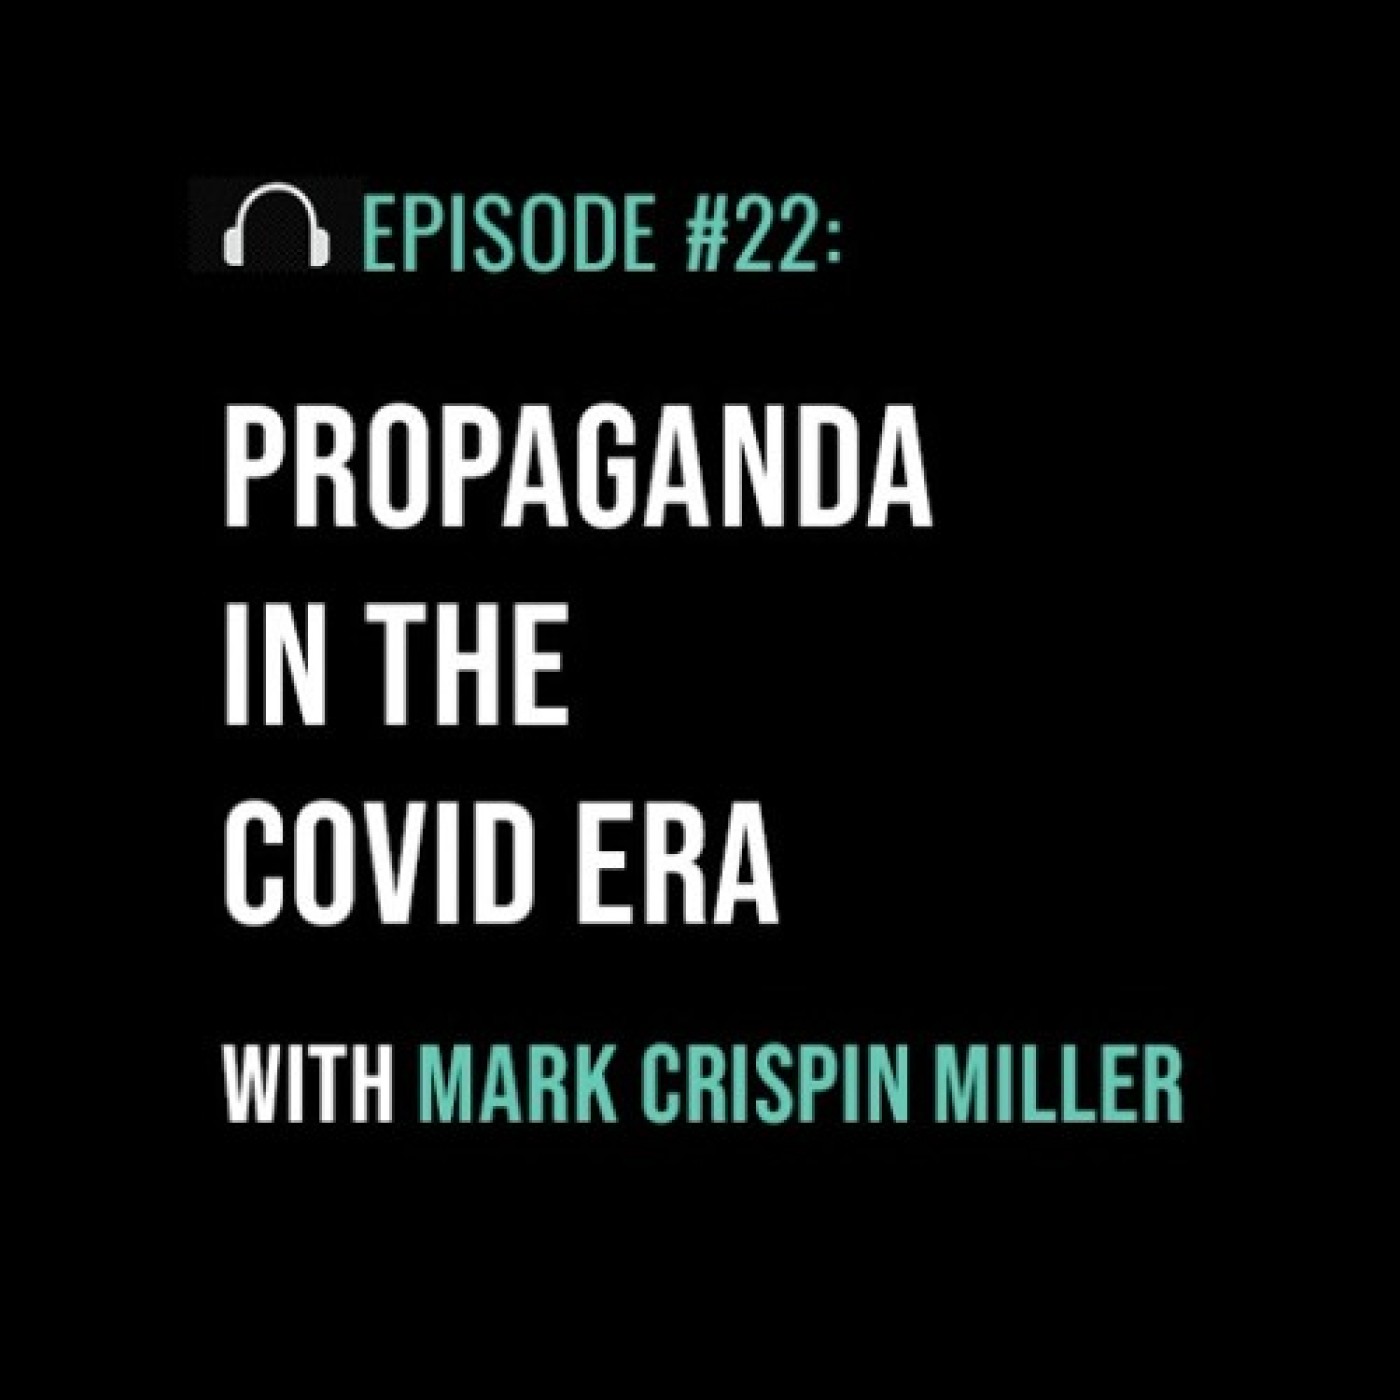 Propaganda in the Covid Era with Mark Crispin Miller